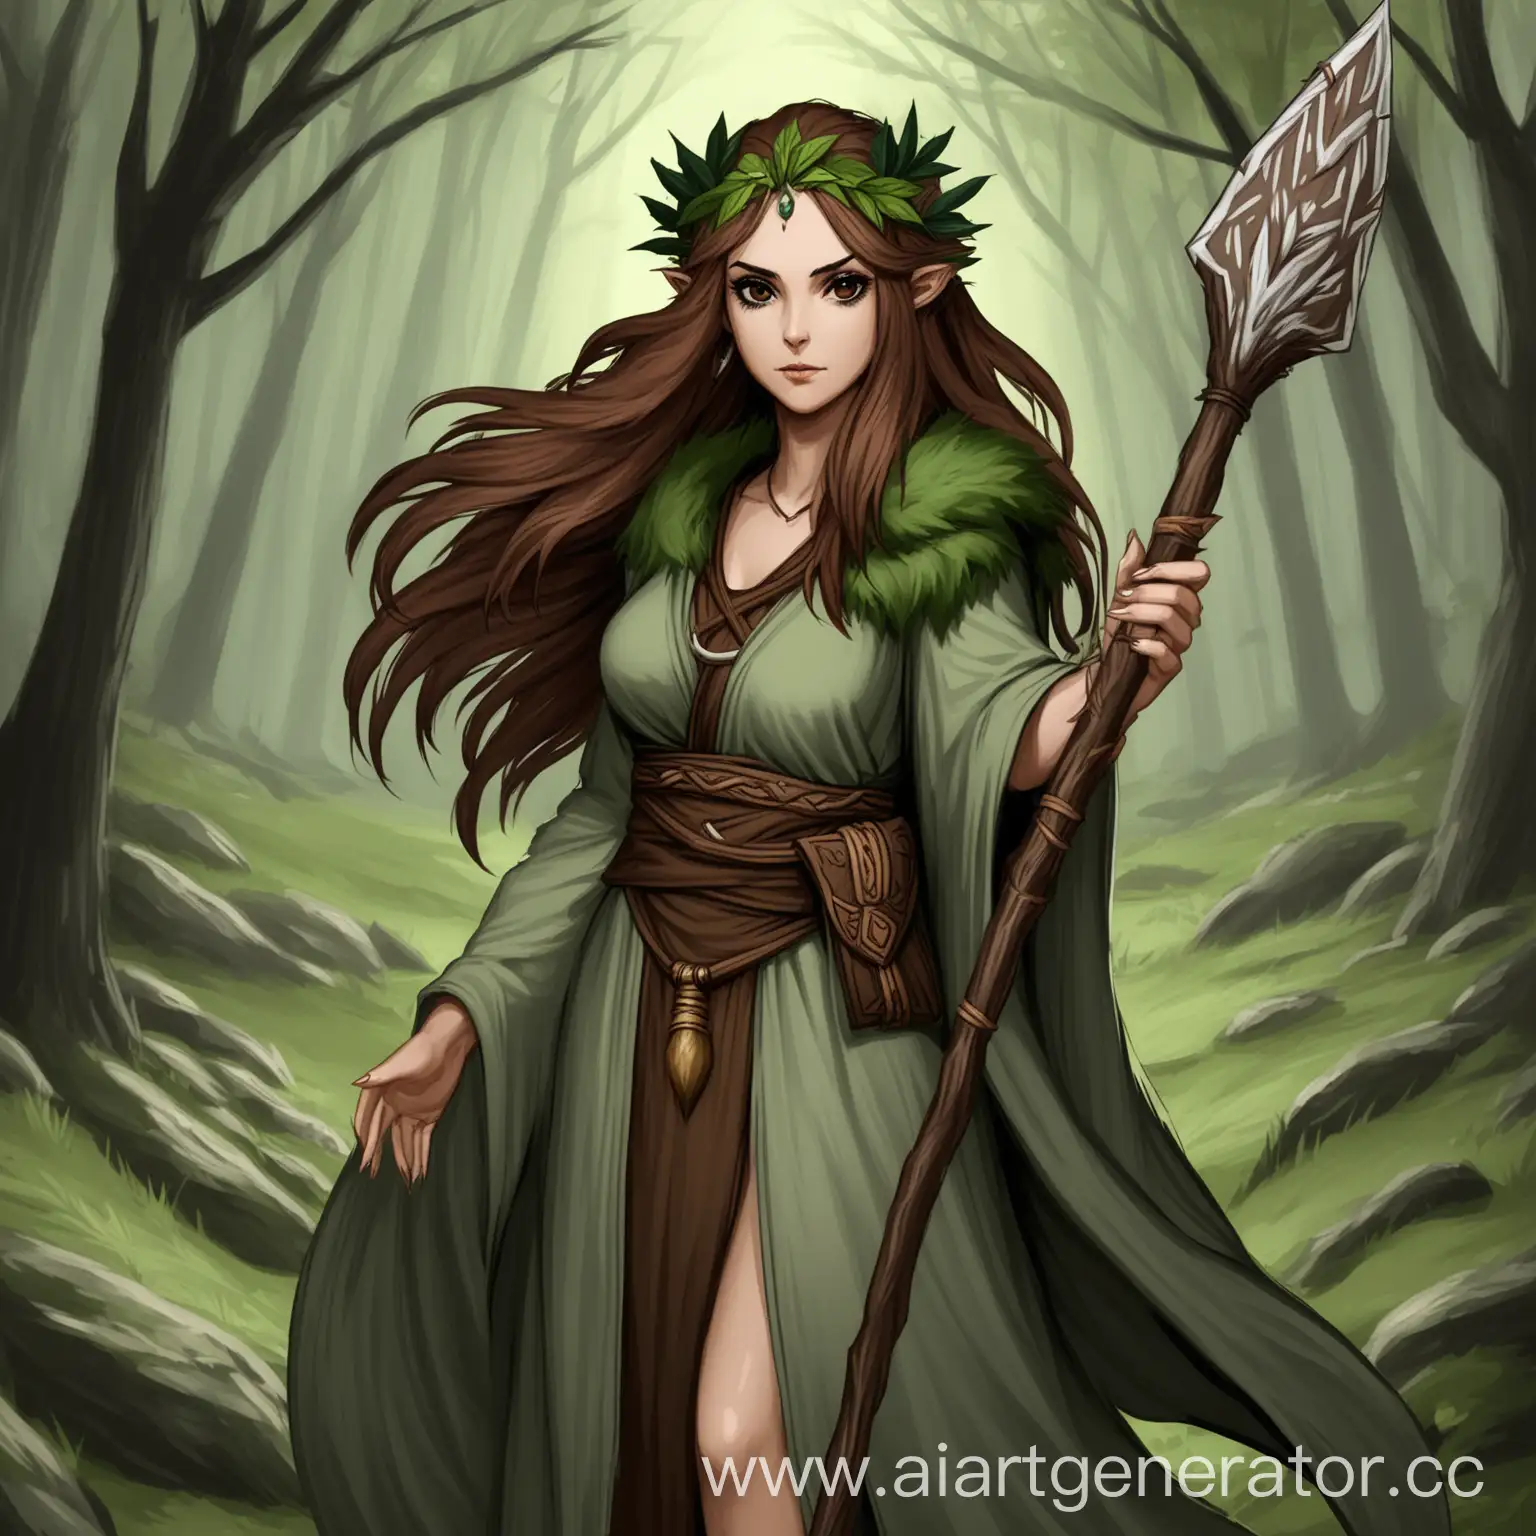 DarkEyed-Woman-Druid-with-Spear-in-Fantasy-Setting